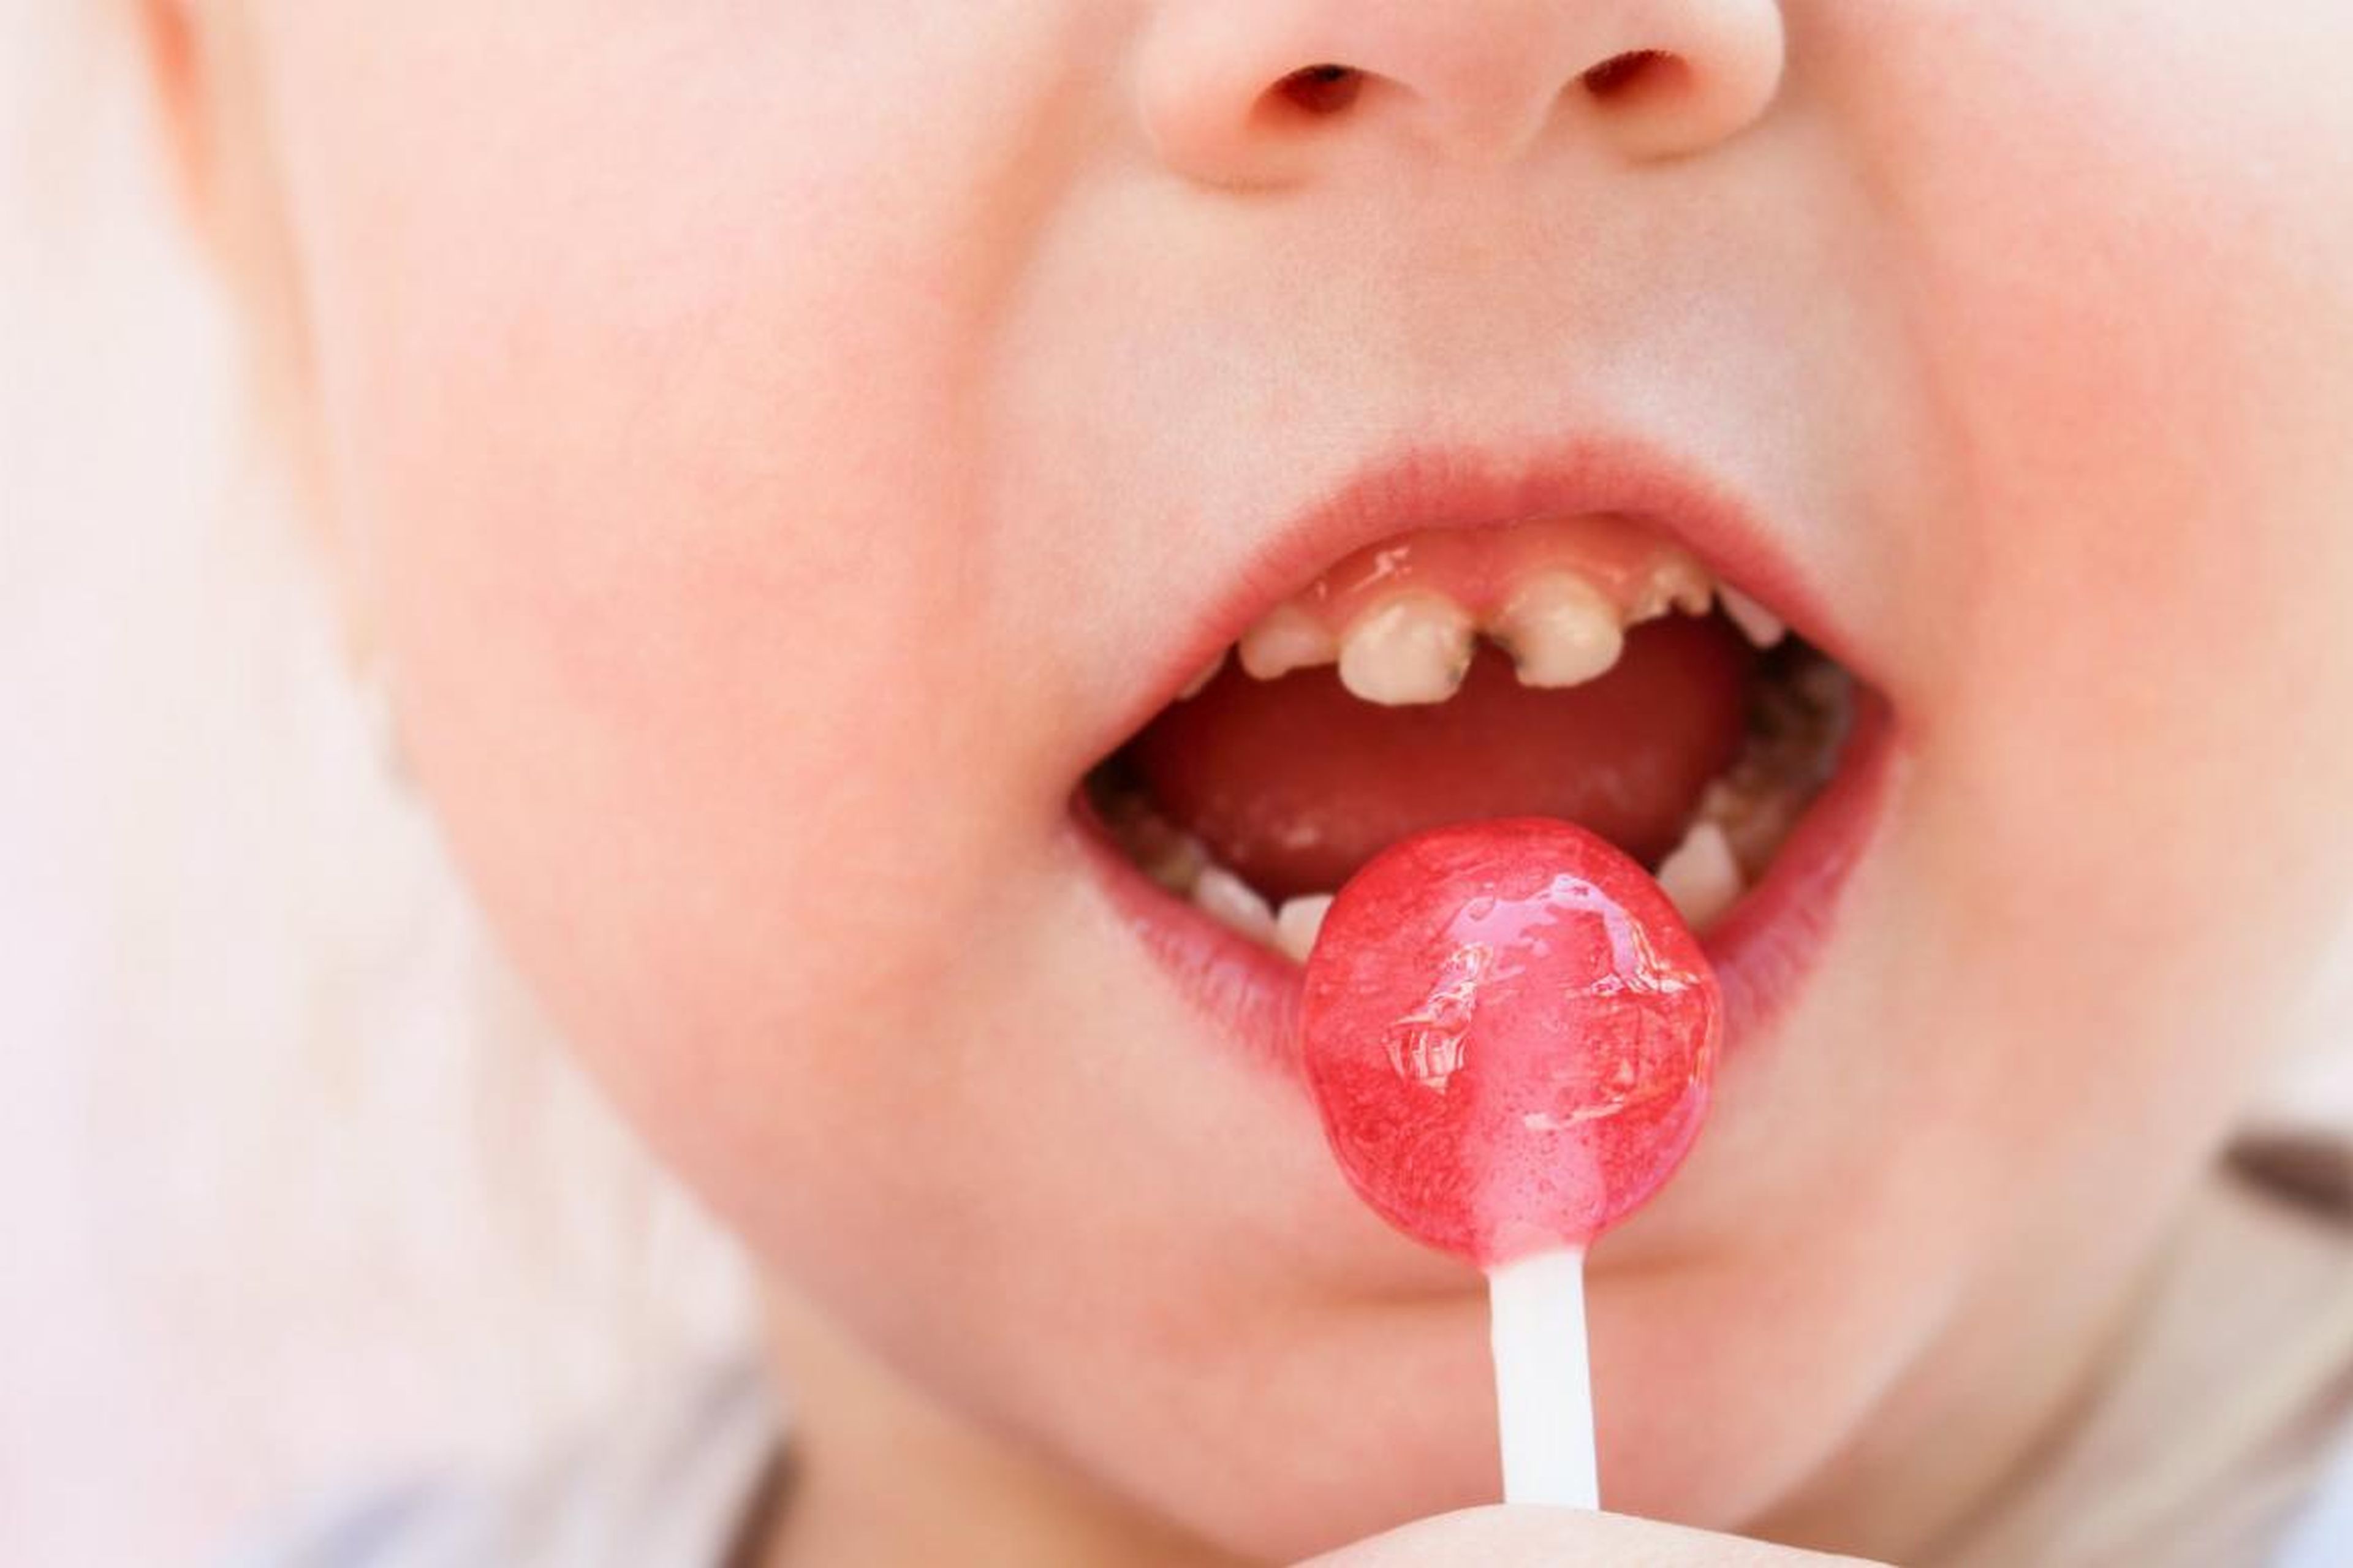 "El azúcar interactúa con las bacterias y produce ácidos que se disuelven y dañan el esmalte dental, provocando que el diente se pudra", advirte Rebecca Lee.